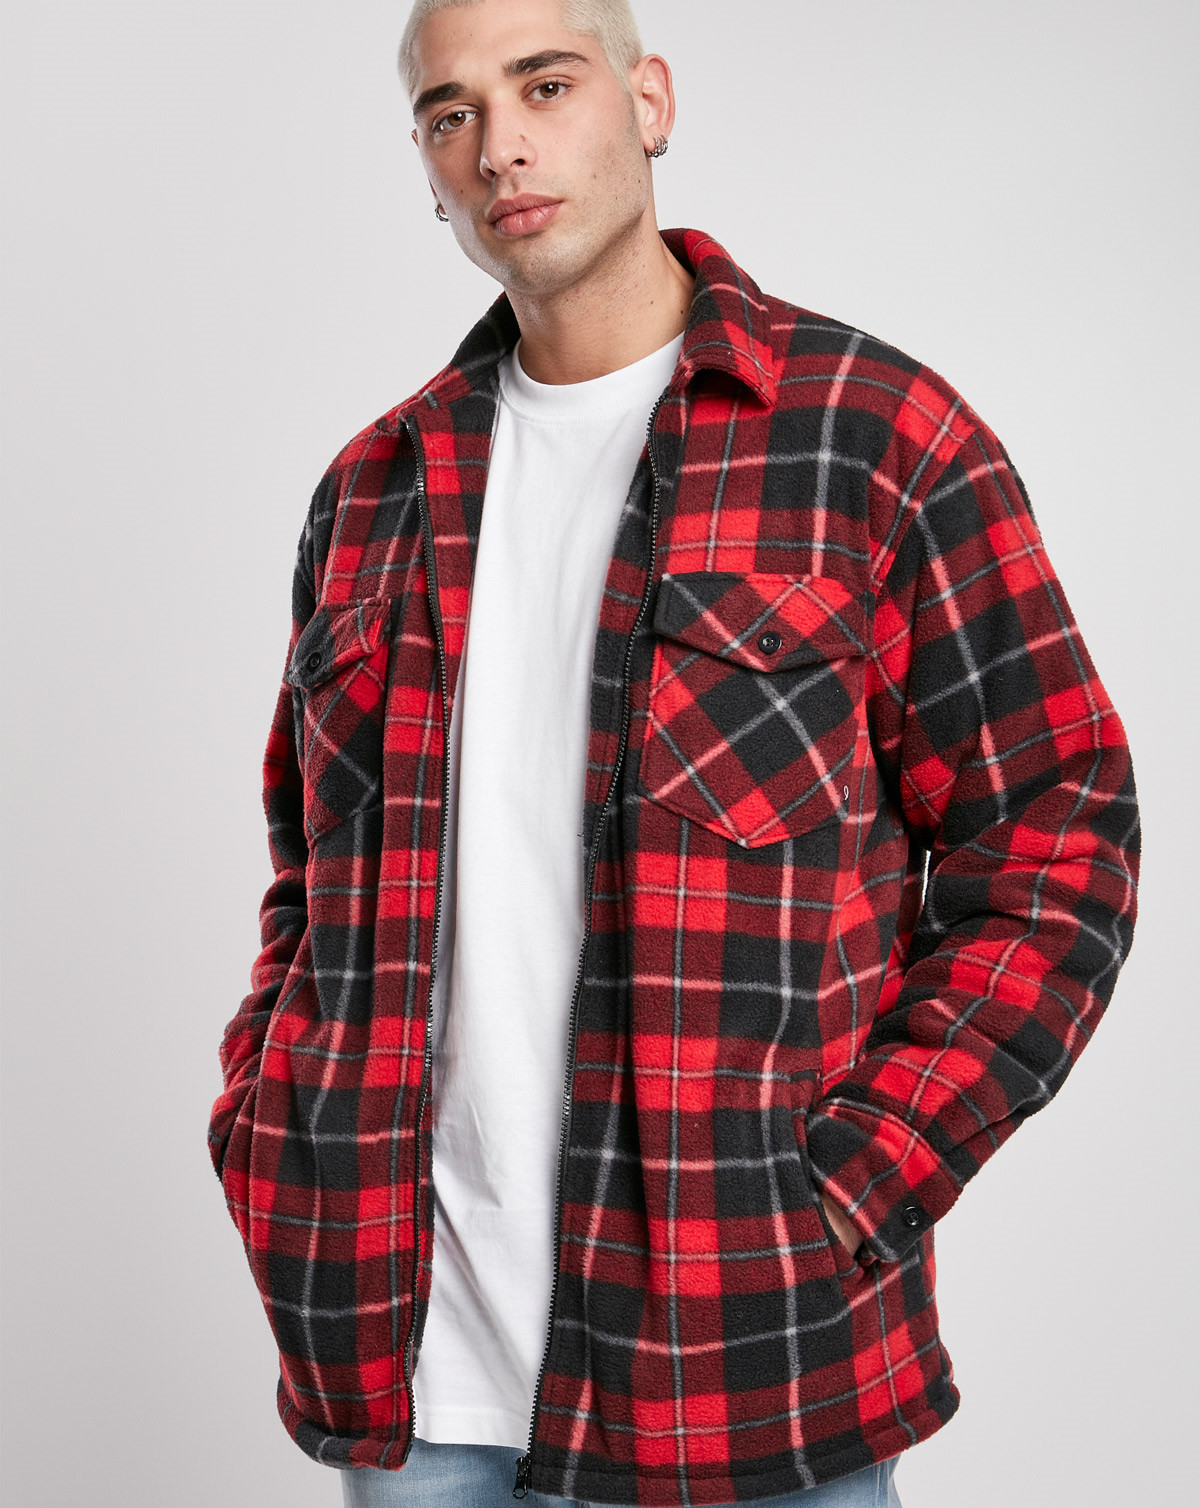 #3 - Urban Classics Plaid Teddy Lined Shirt Jacket (Rød / Sort, 5XL)